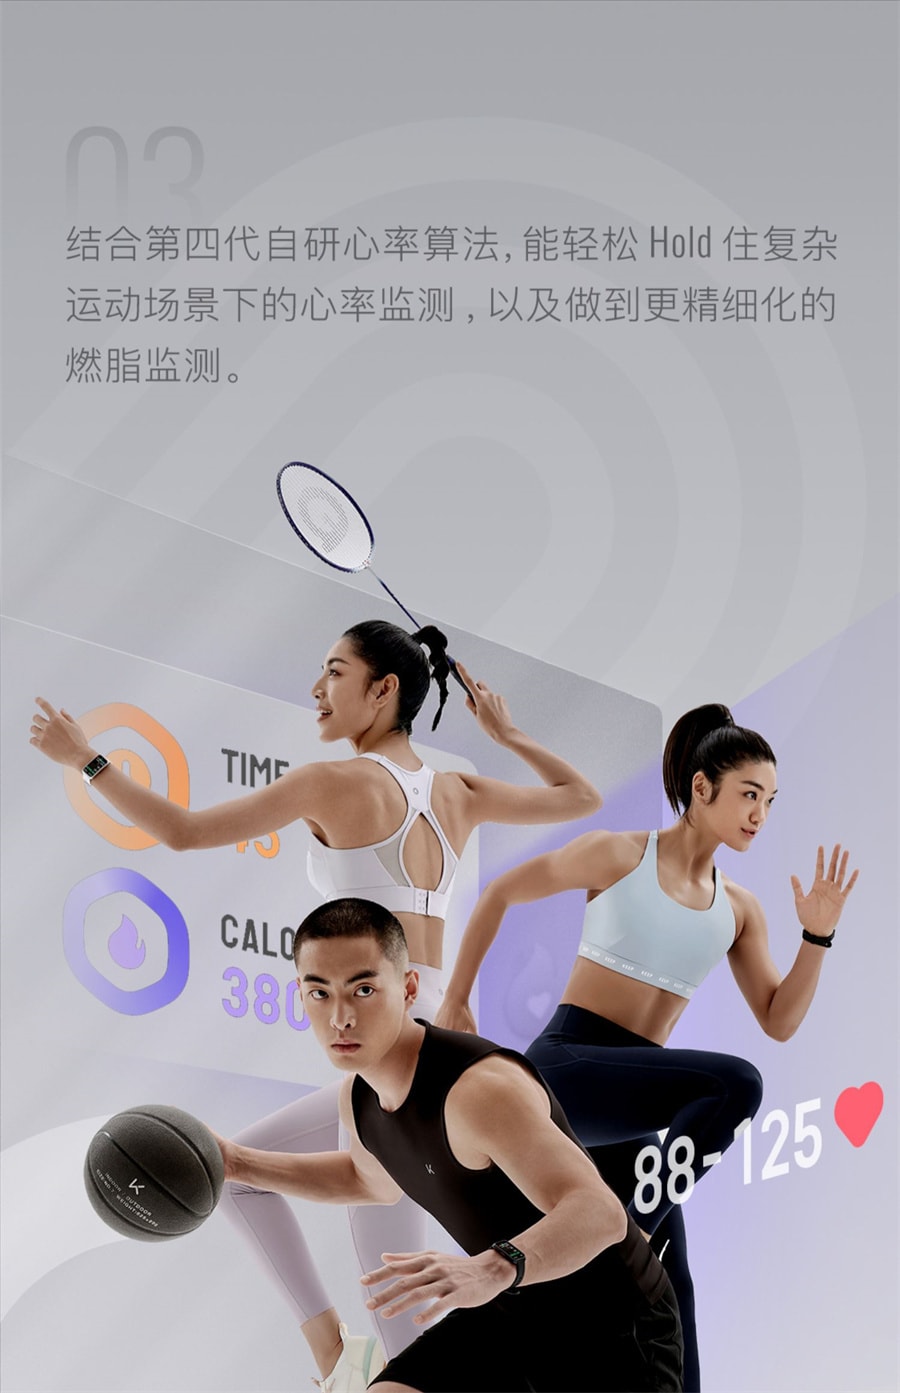 【中国直邮】Keep  手环血氧智能运动手环健身心率睡眠监测学生自律手环运动手表   轻盈白